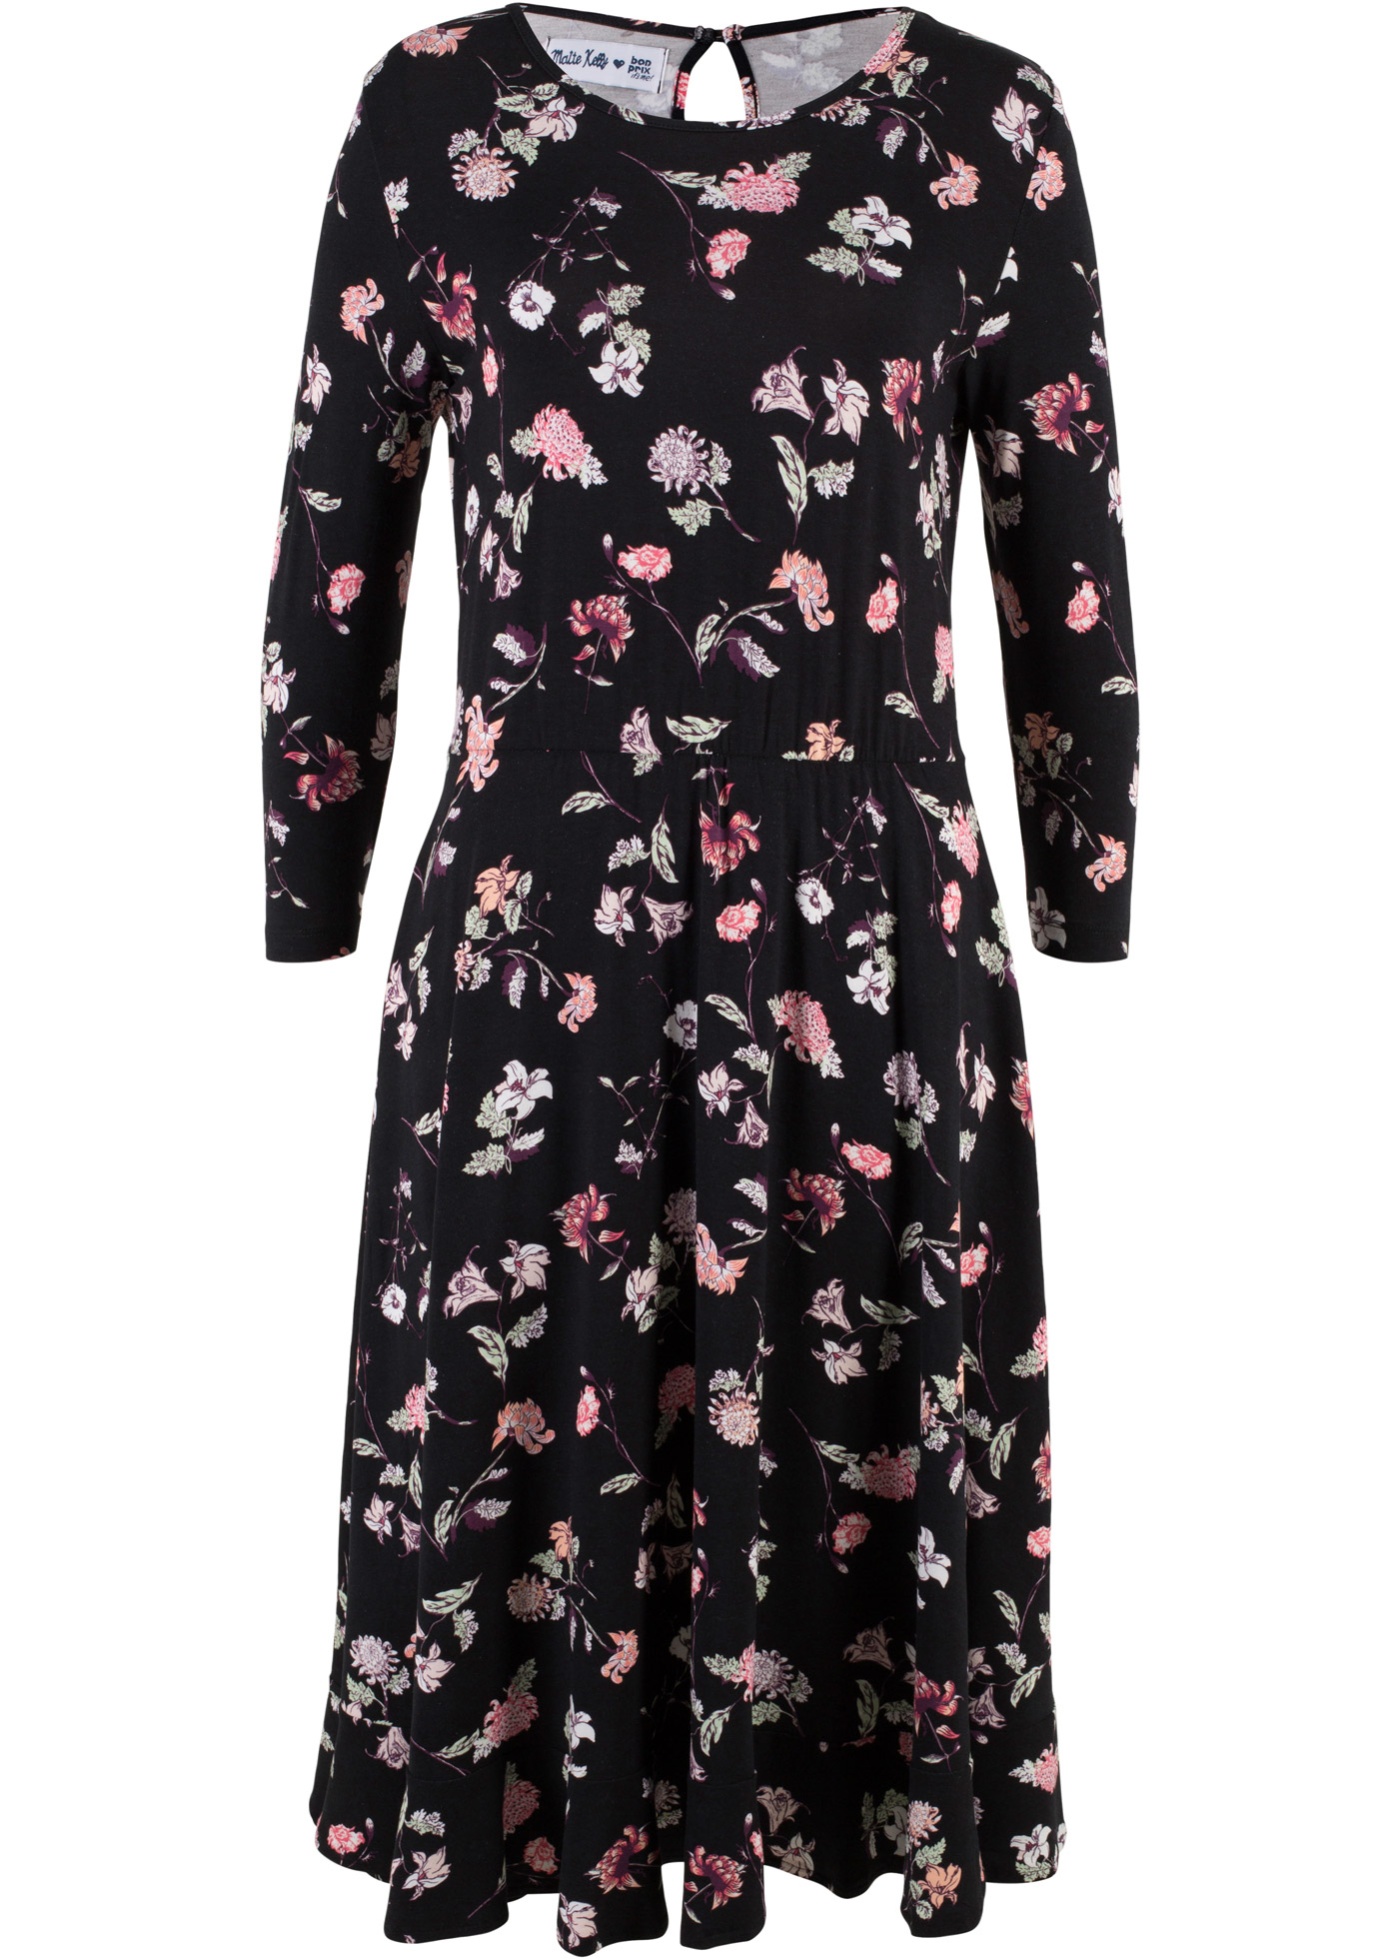 Вайлдберриз платье женское длинное. Bonprix платье от Maite Kelly. Платье Золла цветочный принт. Бонприкс платье в цветочек. Черное платье в цветочек.